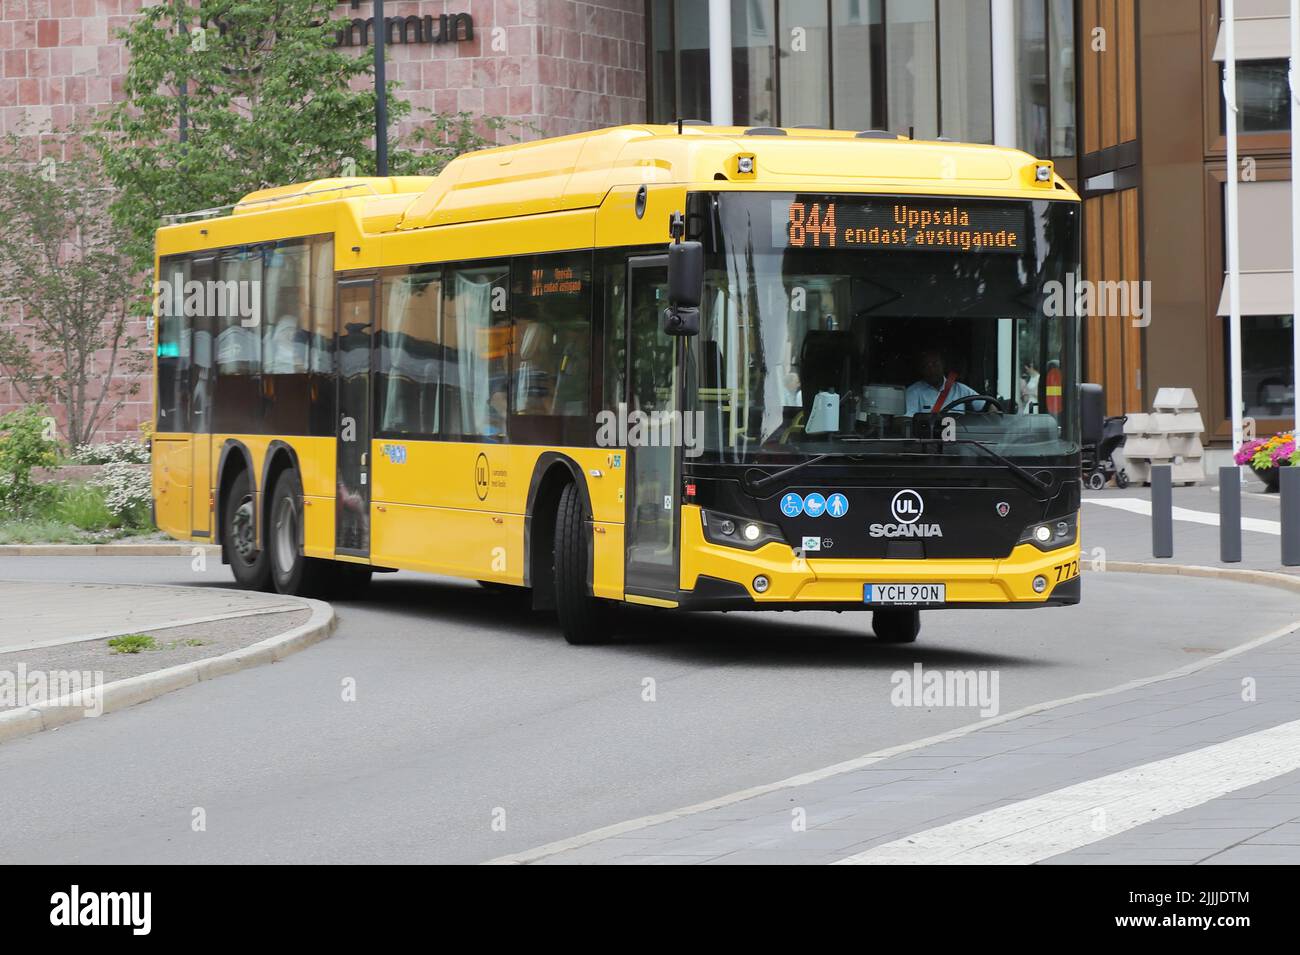 Uppsala, Suecia - 2 de julio de 2022: Autobús regional amarillo de transporte público en la terminal de la estación central de Uppsala. Foto de stock